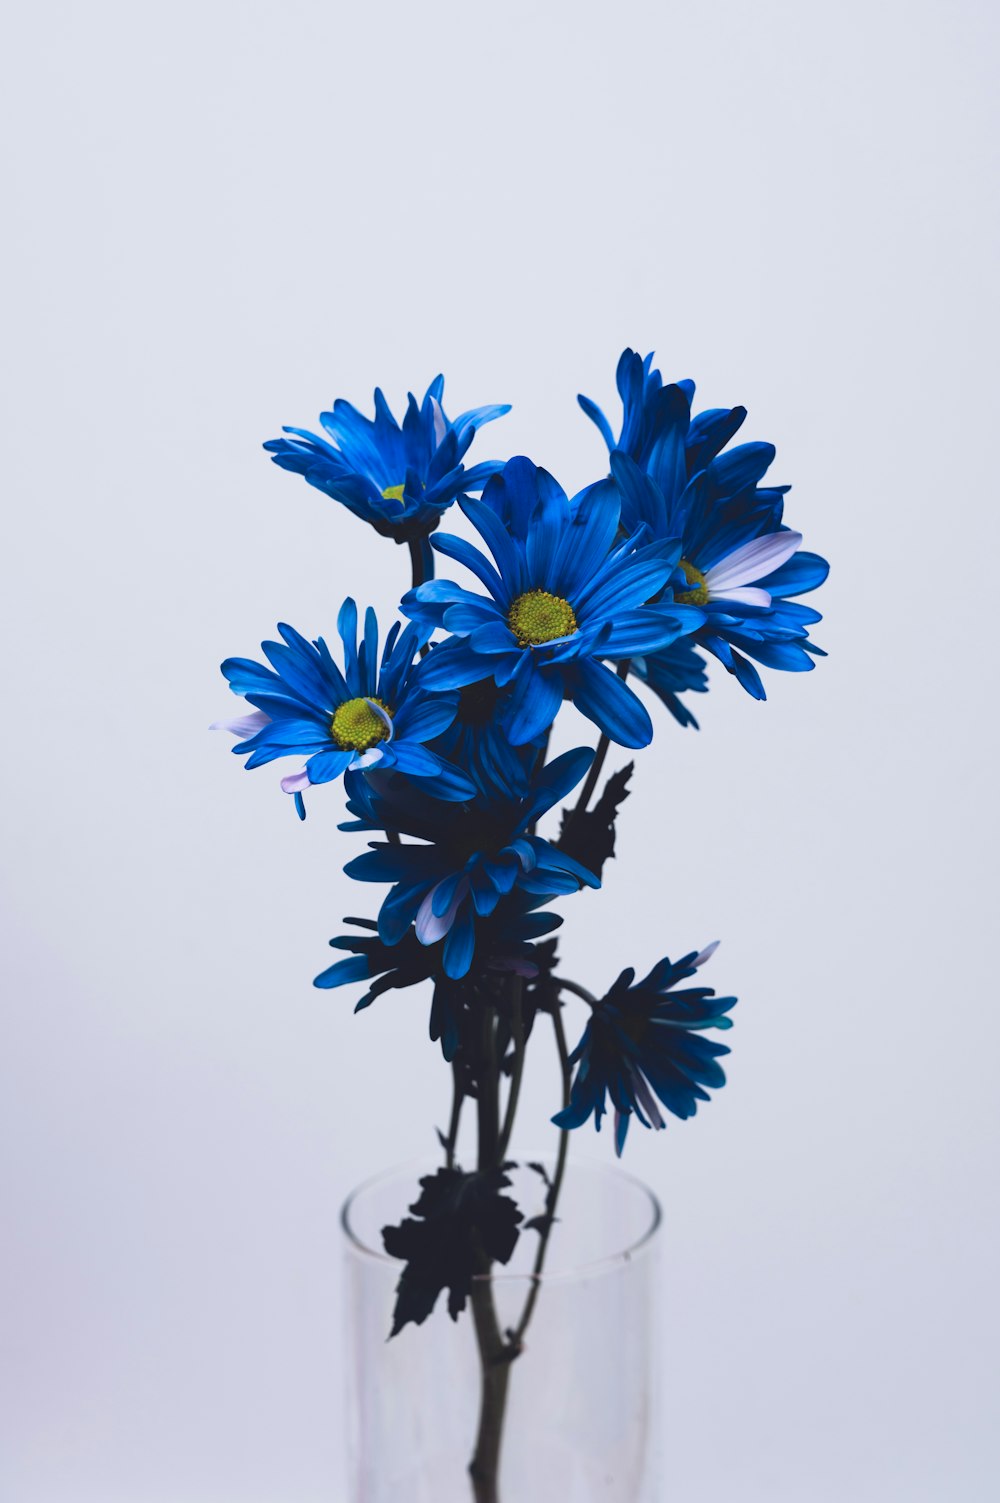 blue and white flowers on white background photo – Free Image on Unsplash